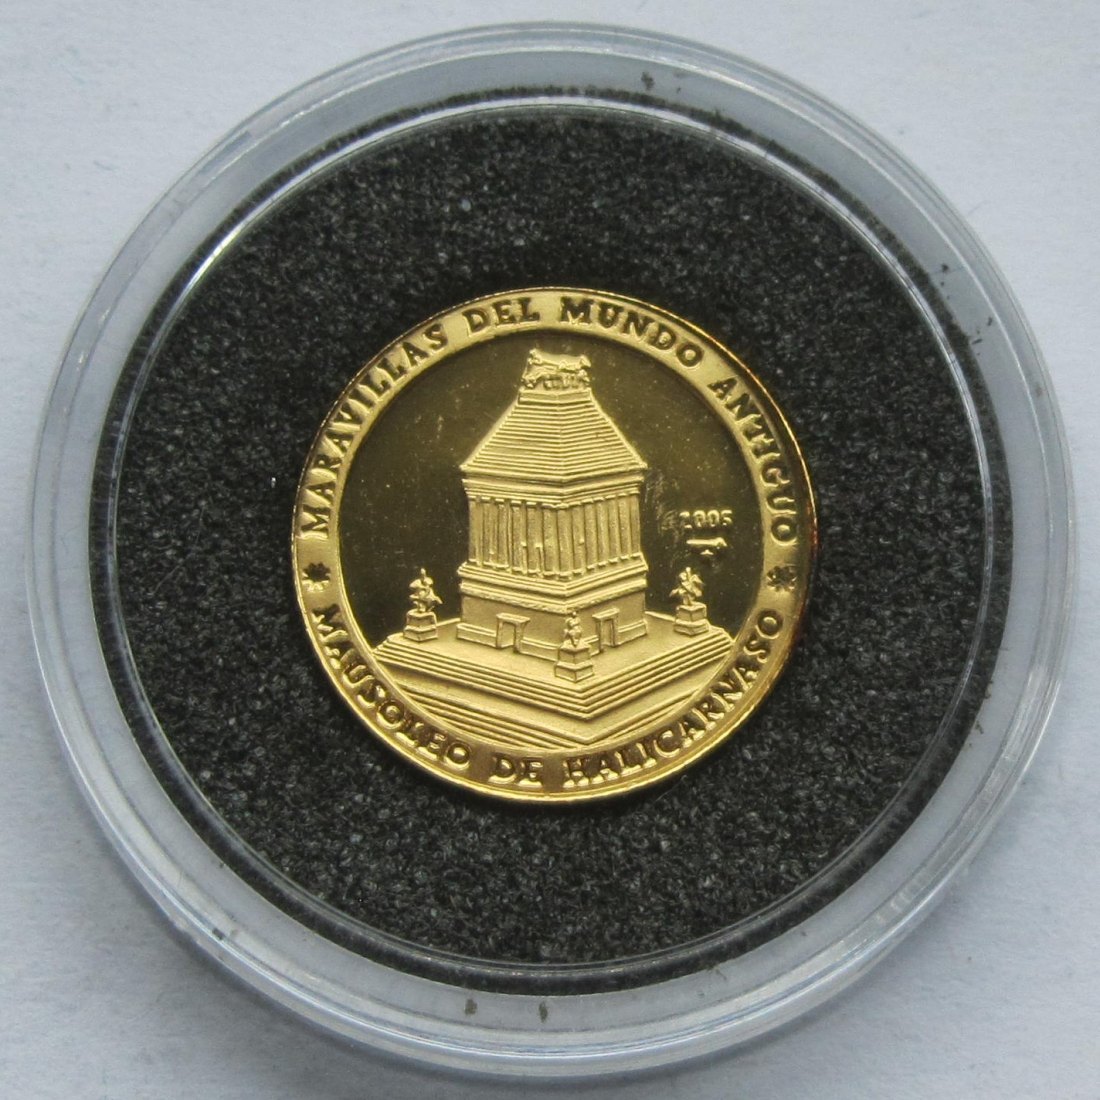  Kuba: 5 Pesos Weltwunder - Mausoleum 2005, 1,24 g (1/25 Unze) Feingold   